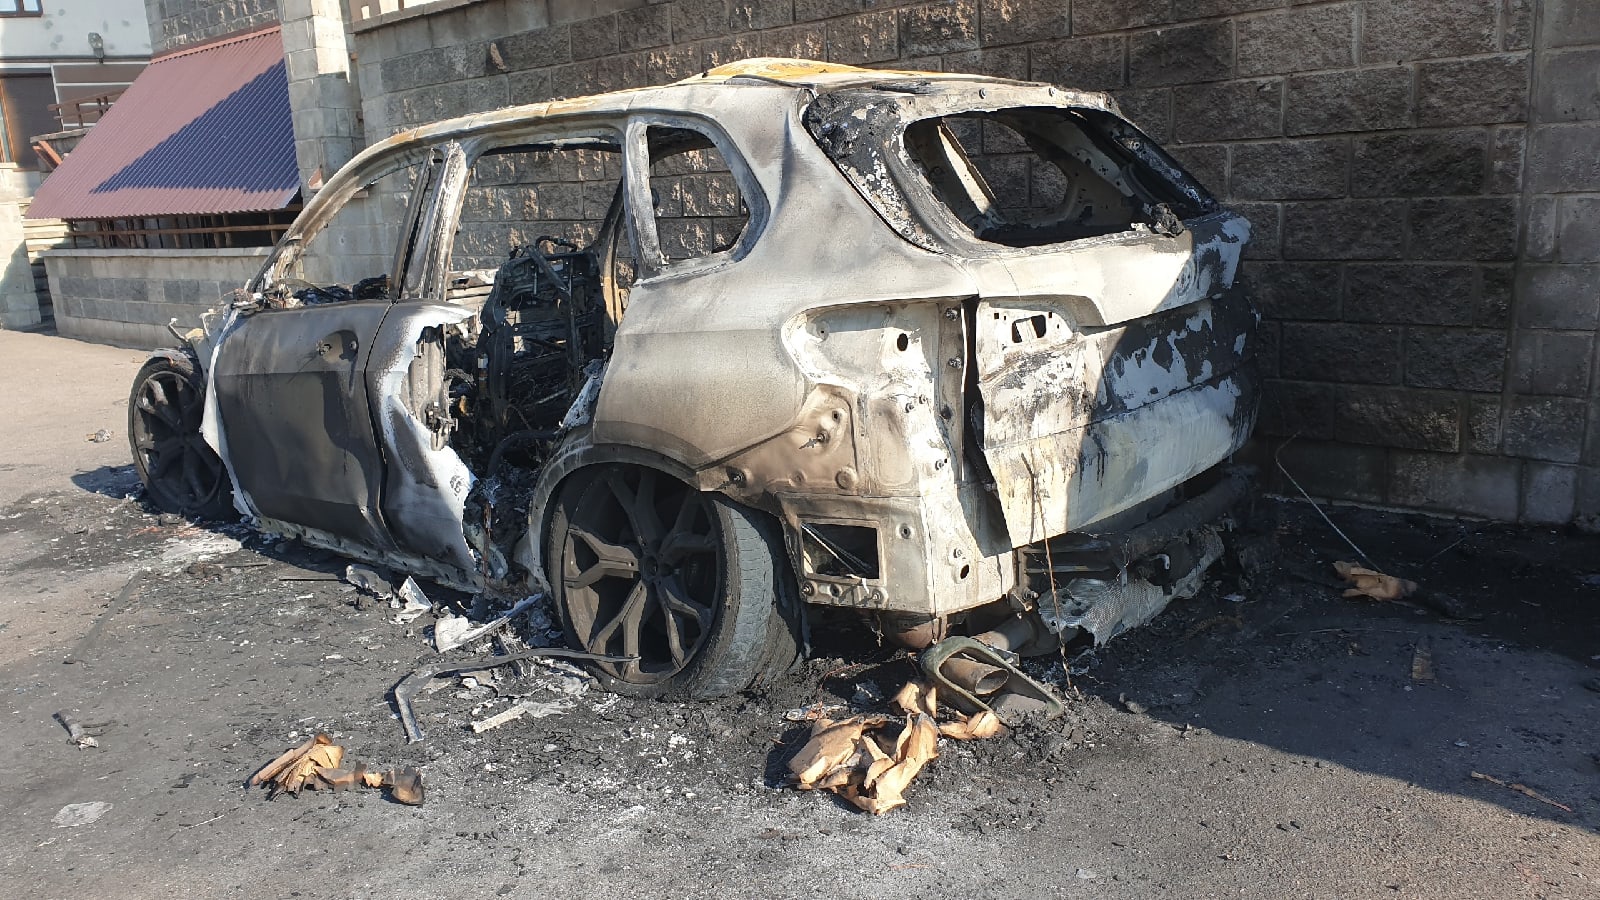 Бмв сгорела. Сгорел БМВ х5. Санкт-Петербург сгорел автомобиль. СПБ сгорела машина сегодня.